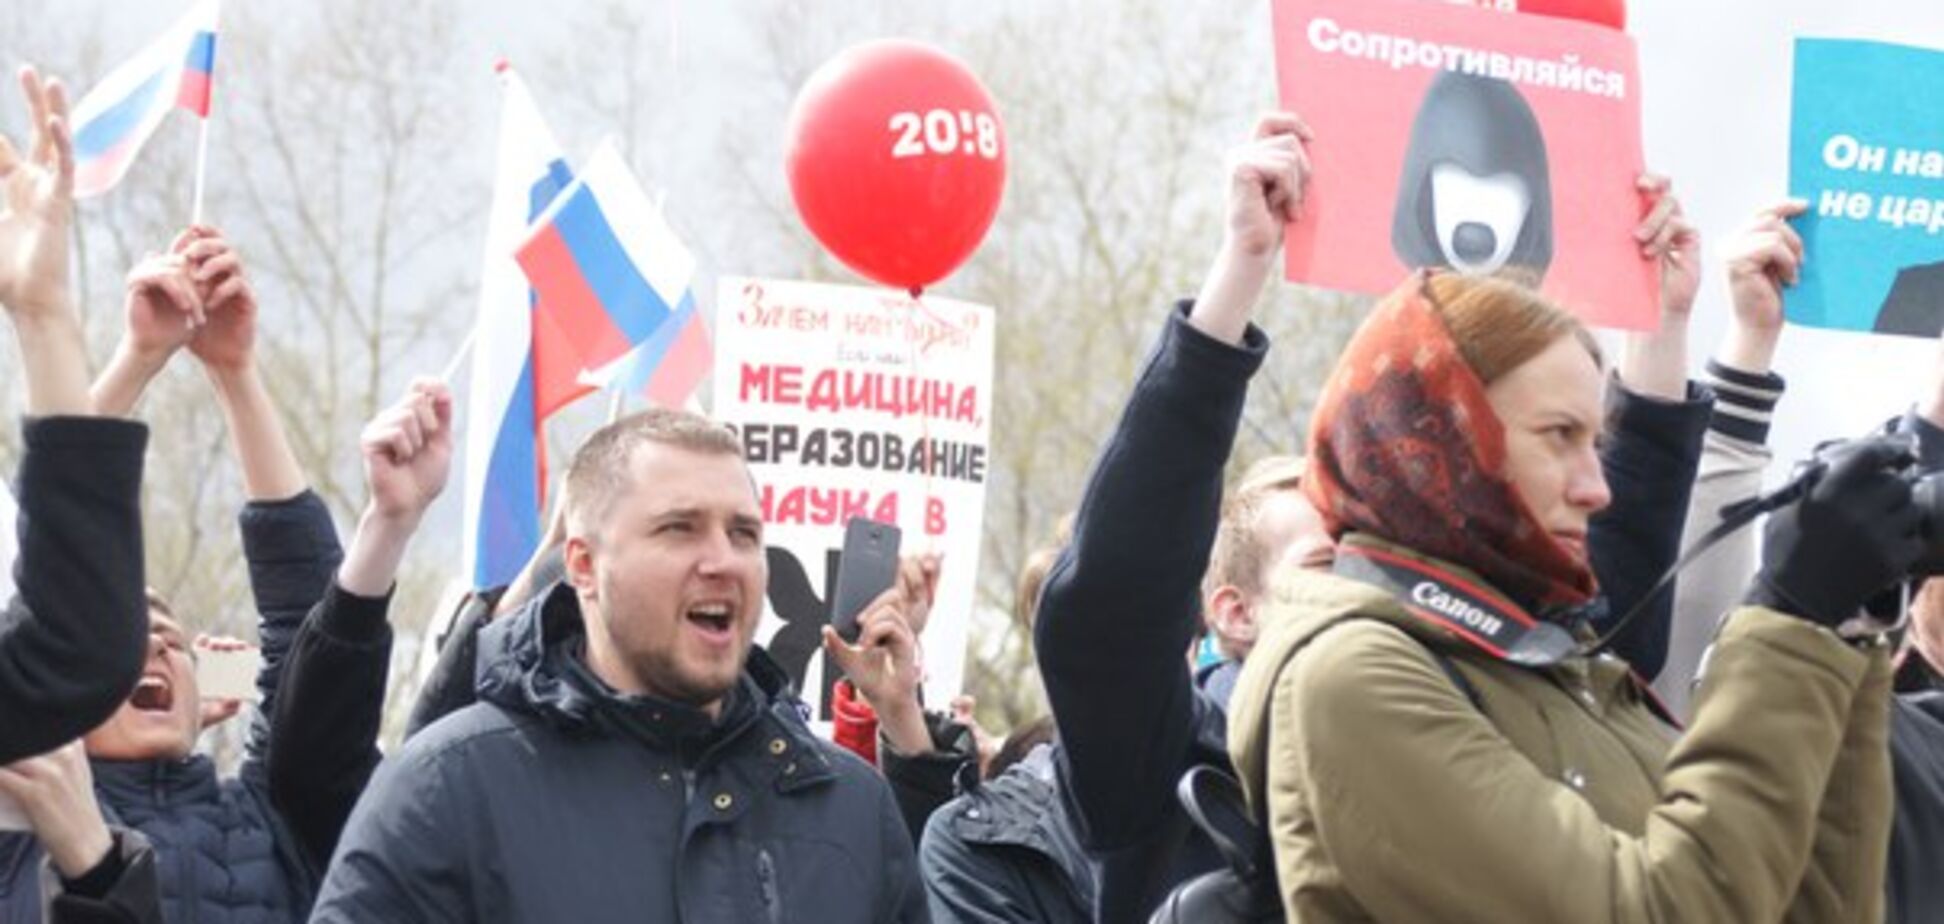 'Він нам не цар': по всій Росії прокотилася хвиля протестів